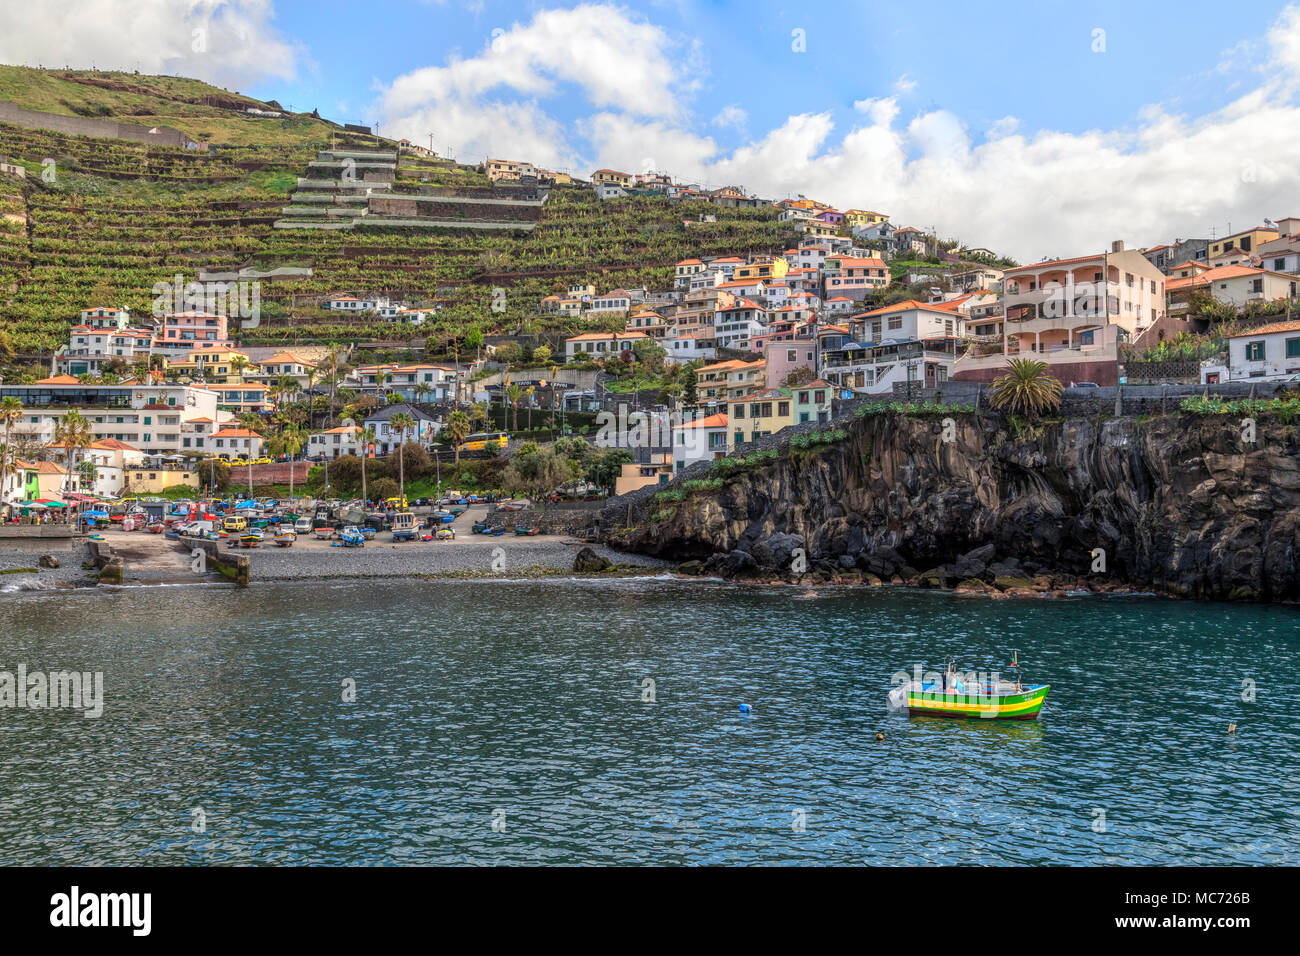 Camara de Lobos, Madeira, Portugal, Europe Stock Photo